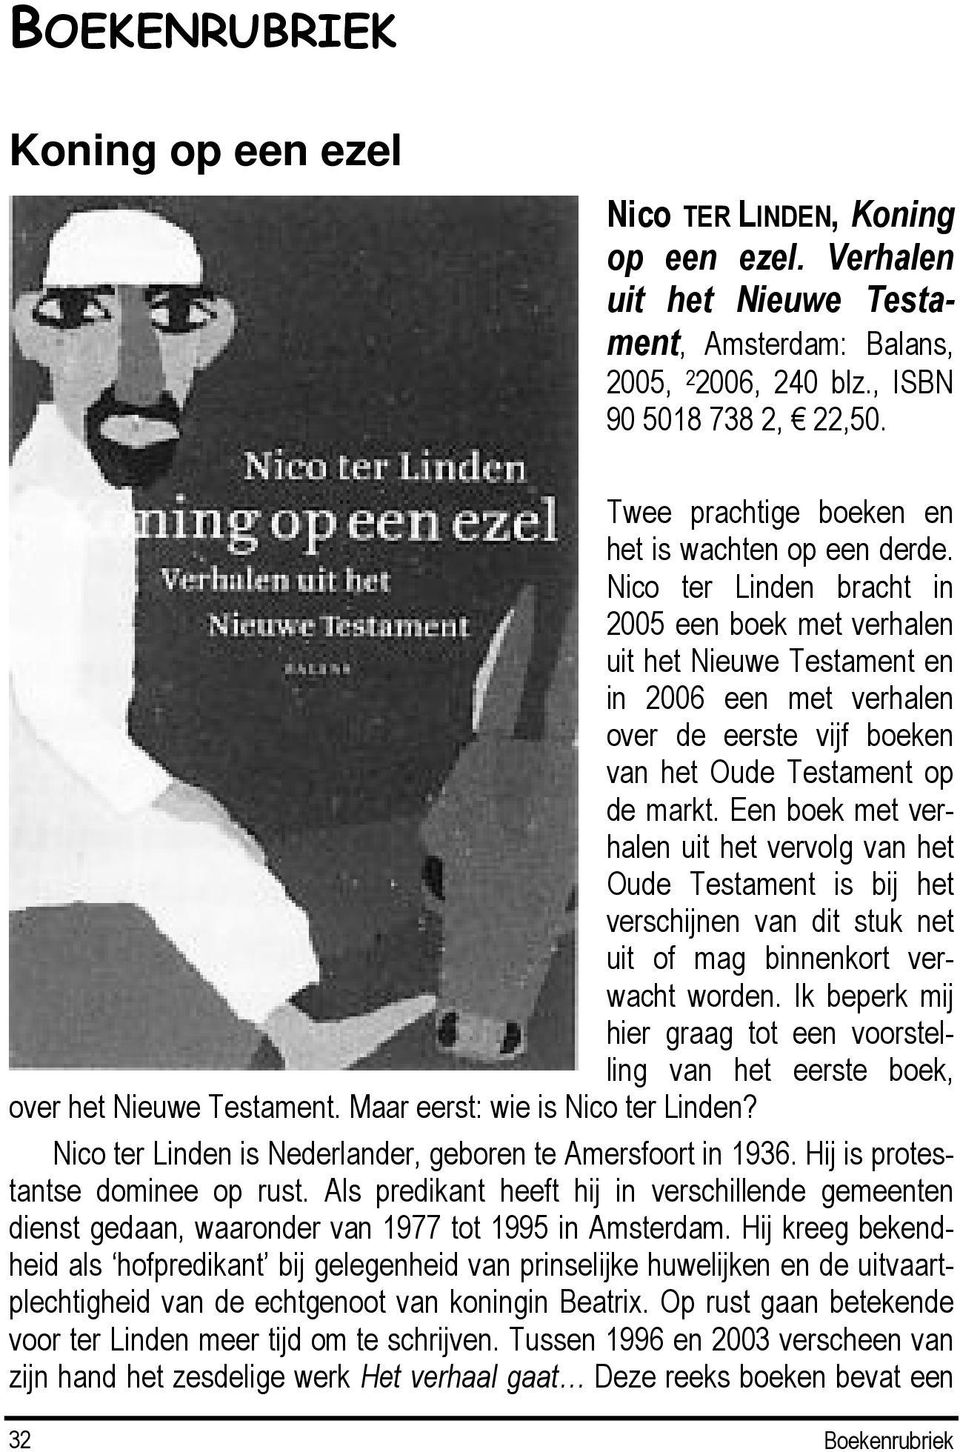 Nico ter Linden bracht in 2005 een boek met verhalen uit het Nieuwe Testament en in 2006 een met verhalen over de eerste vijf boeken van het Oude Testament op de markt.